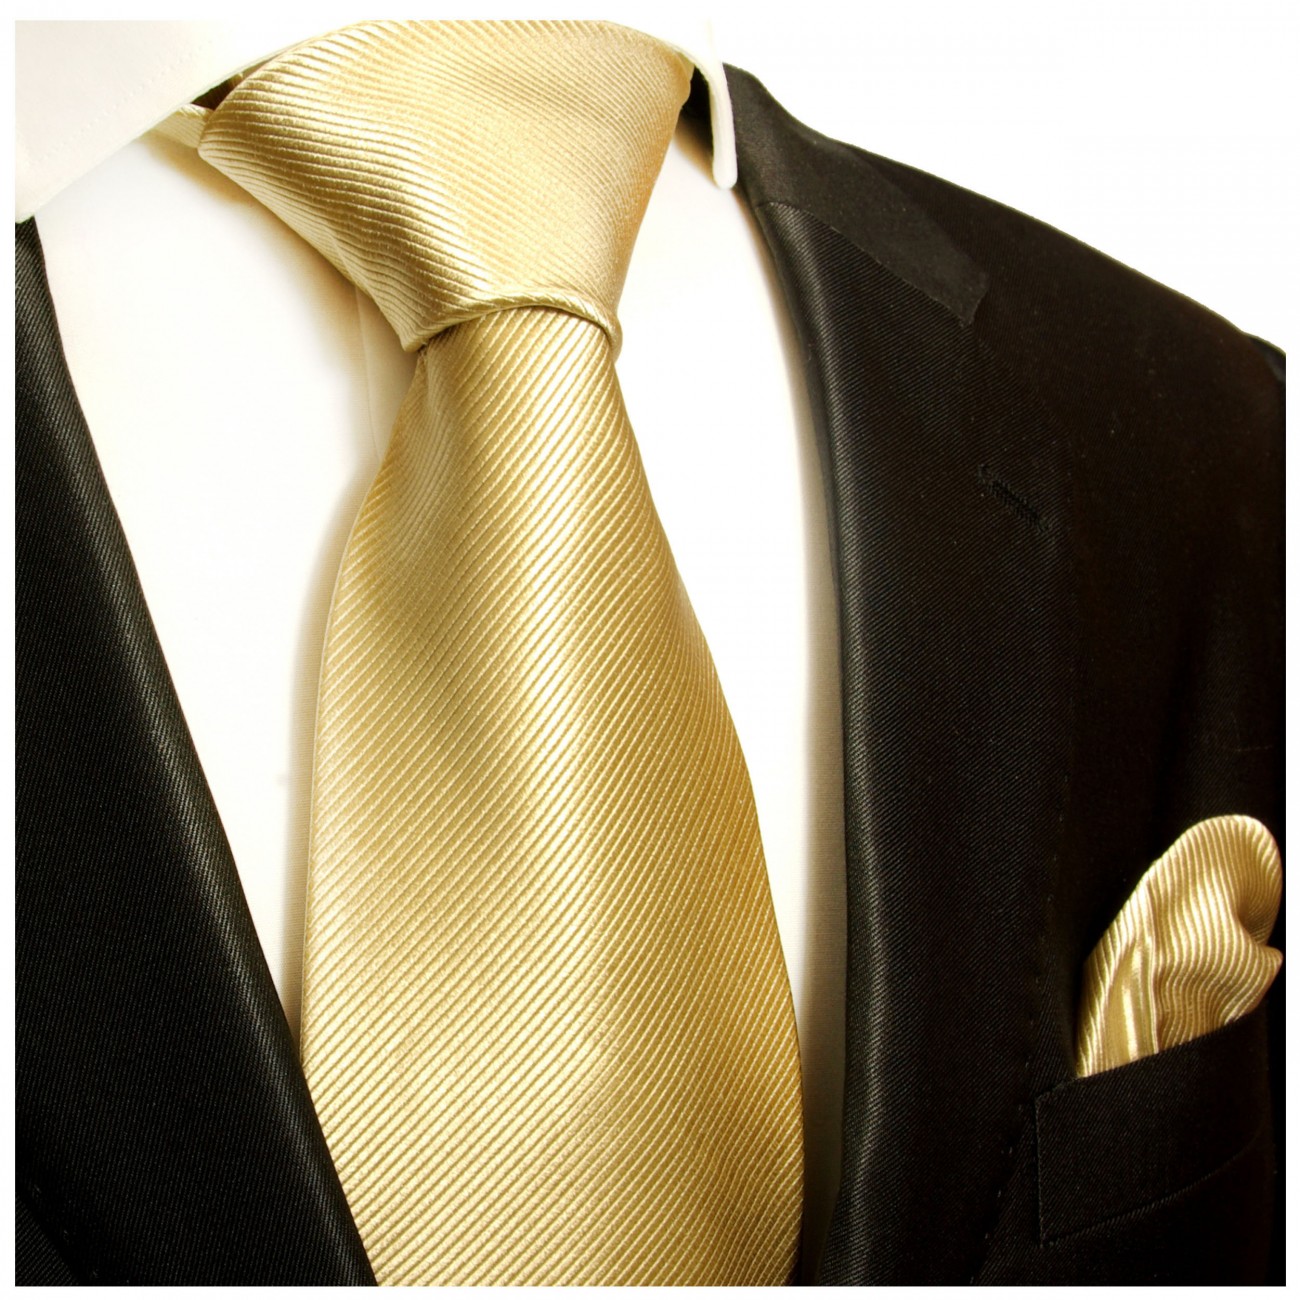 Krawatte gold braun uni mit Einstecktuch